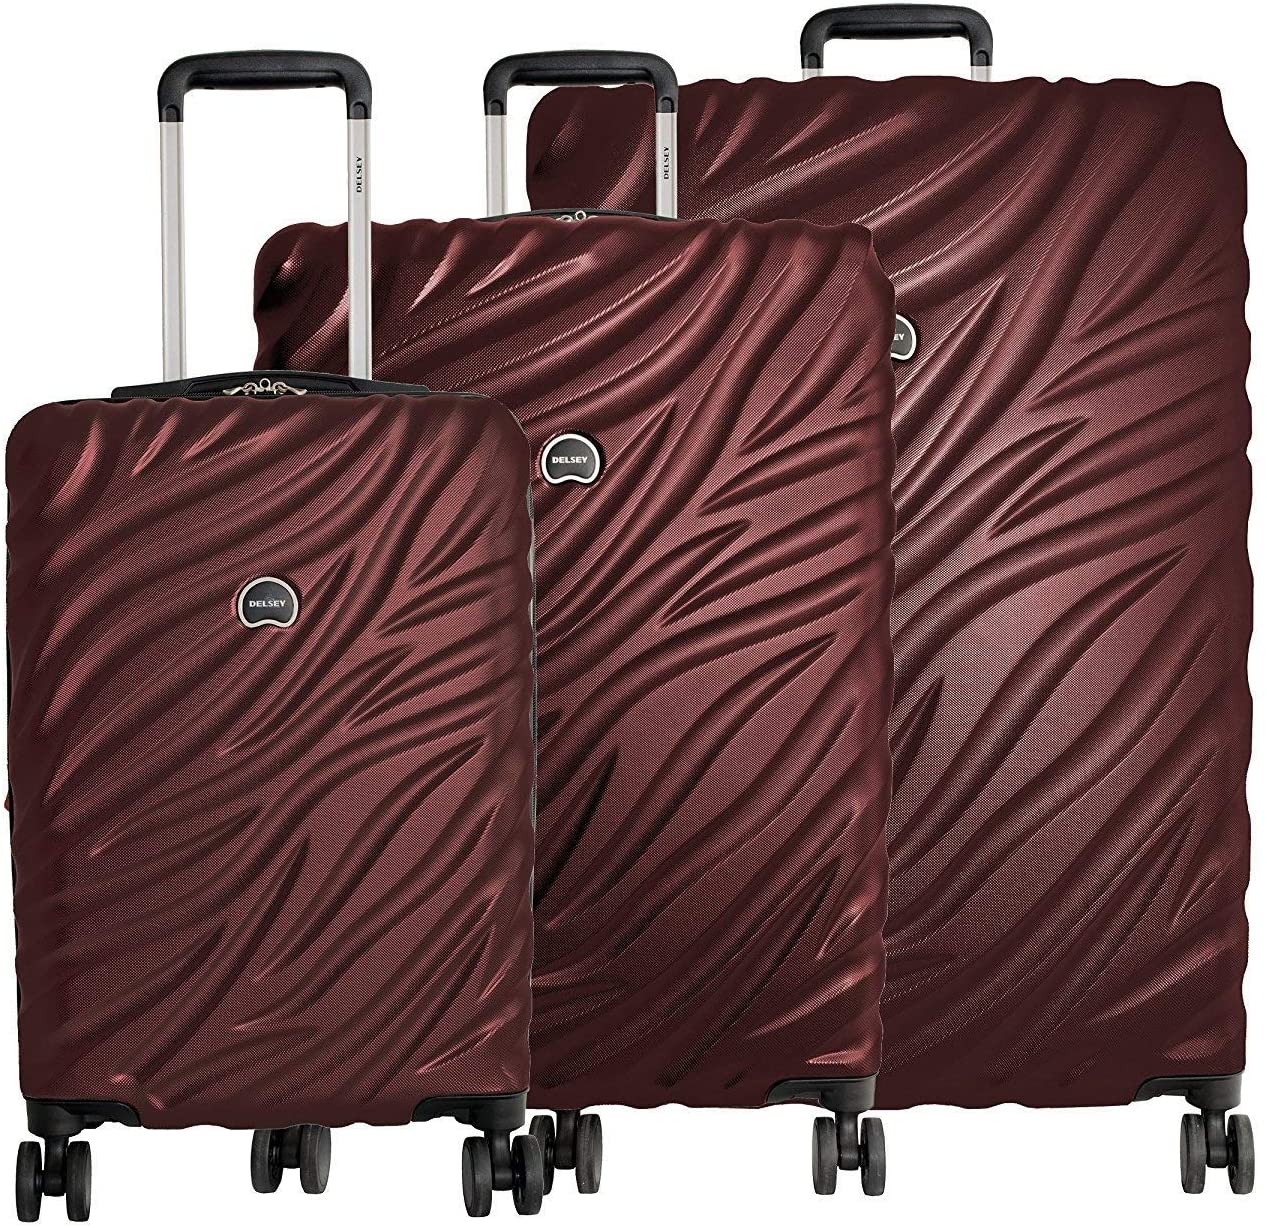 Delsey Sturdy Wheeled Hardshell Luggage Set, 3-Piece